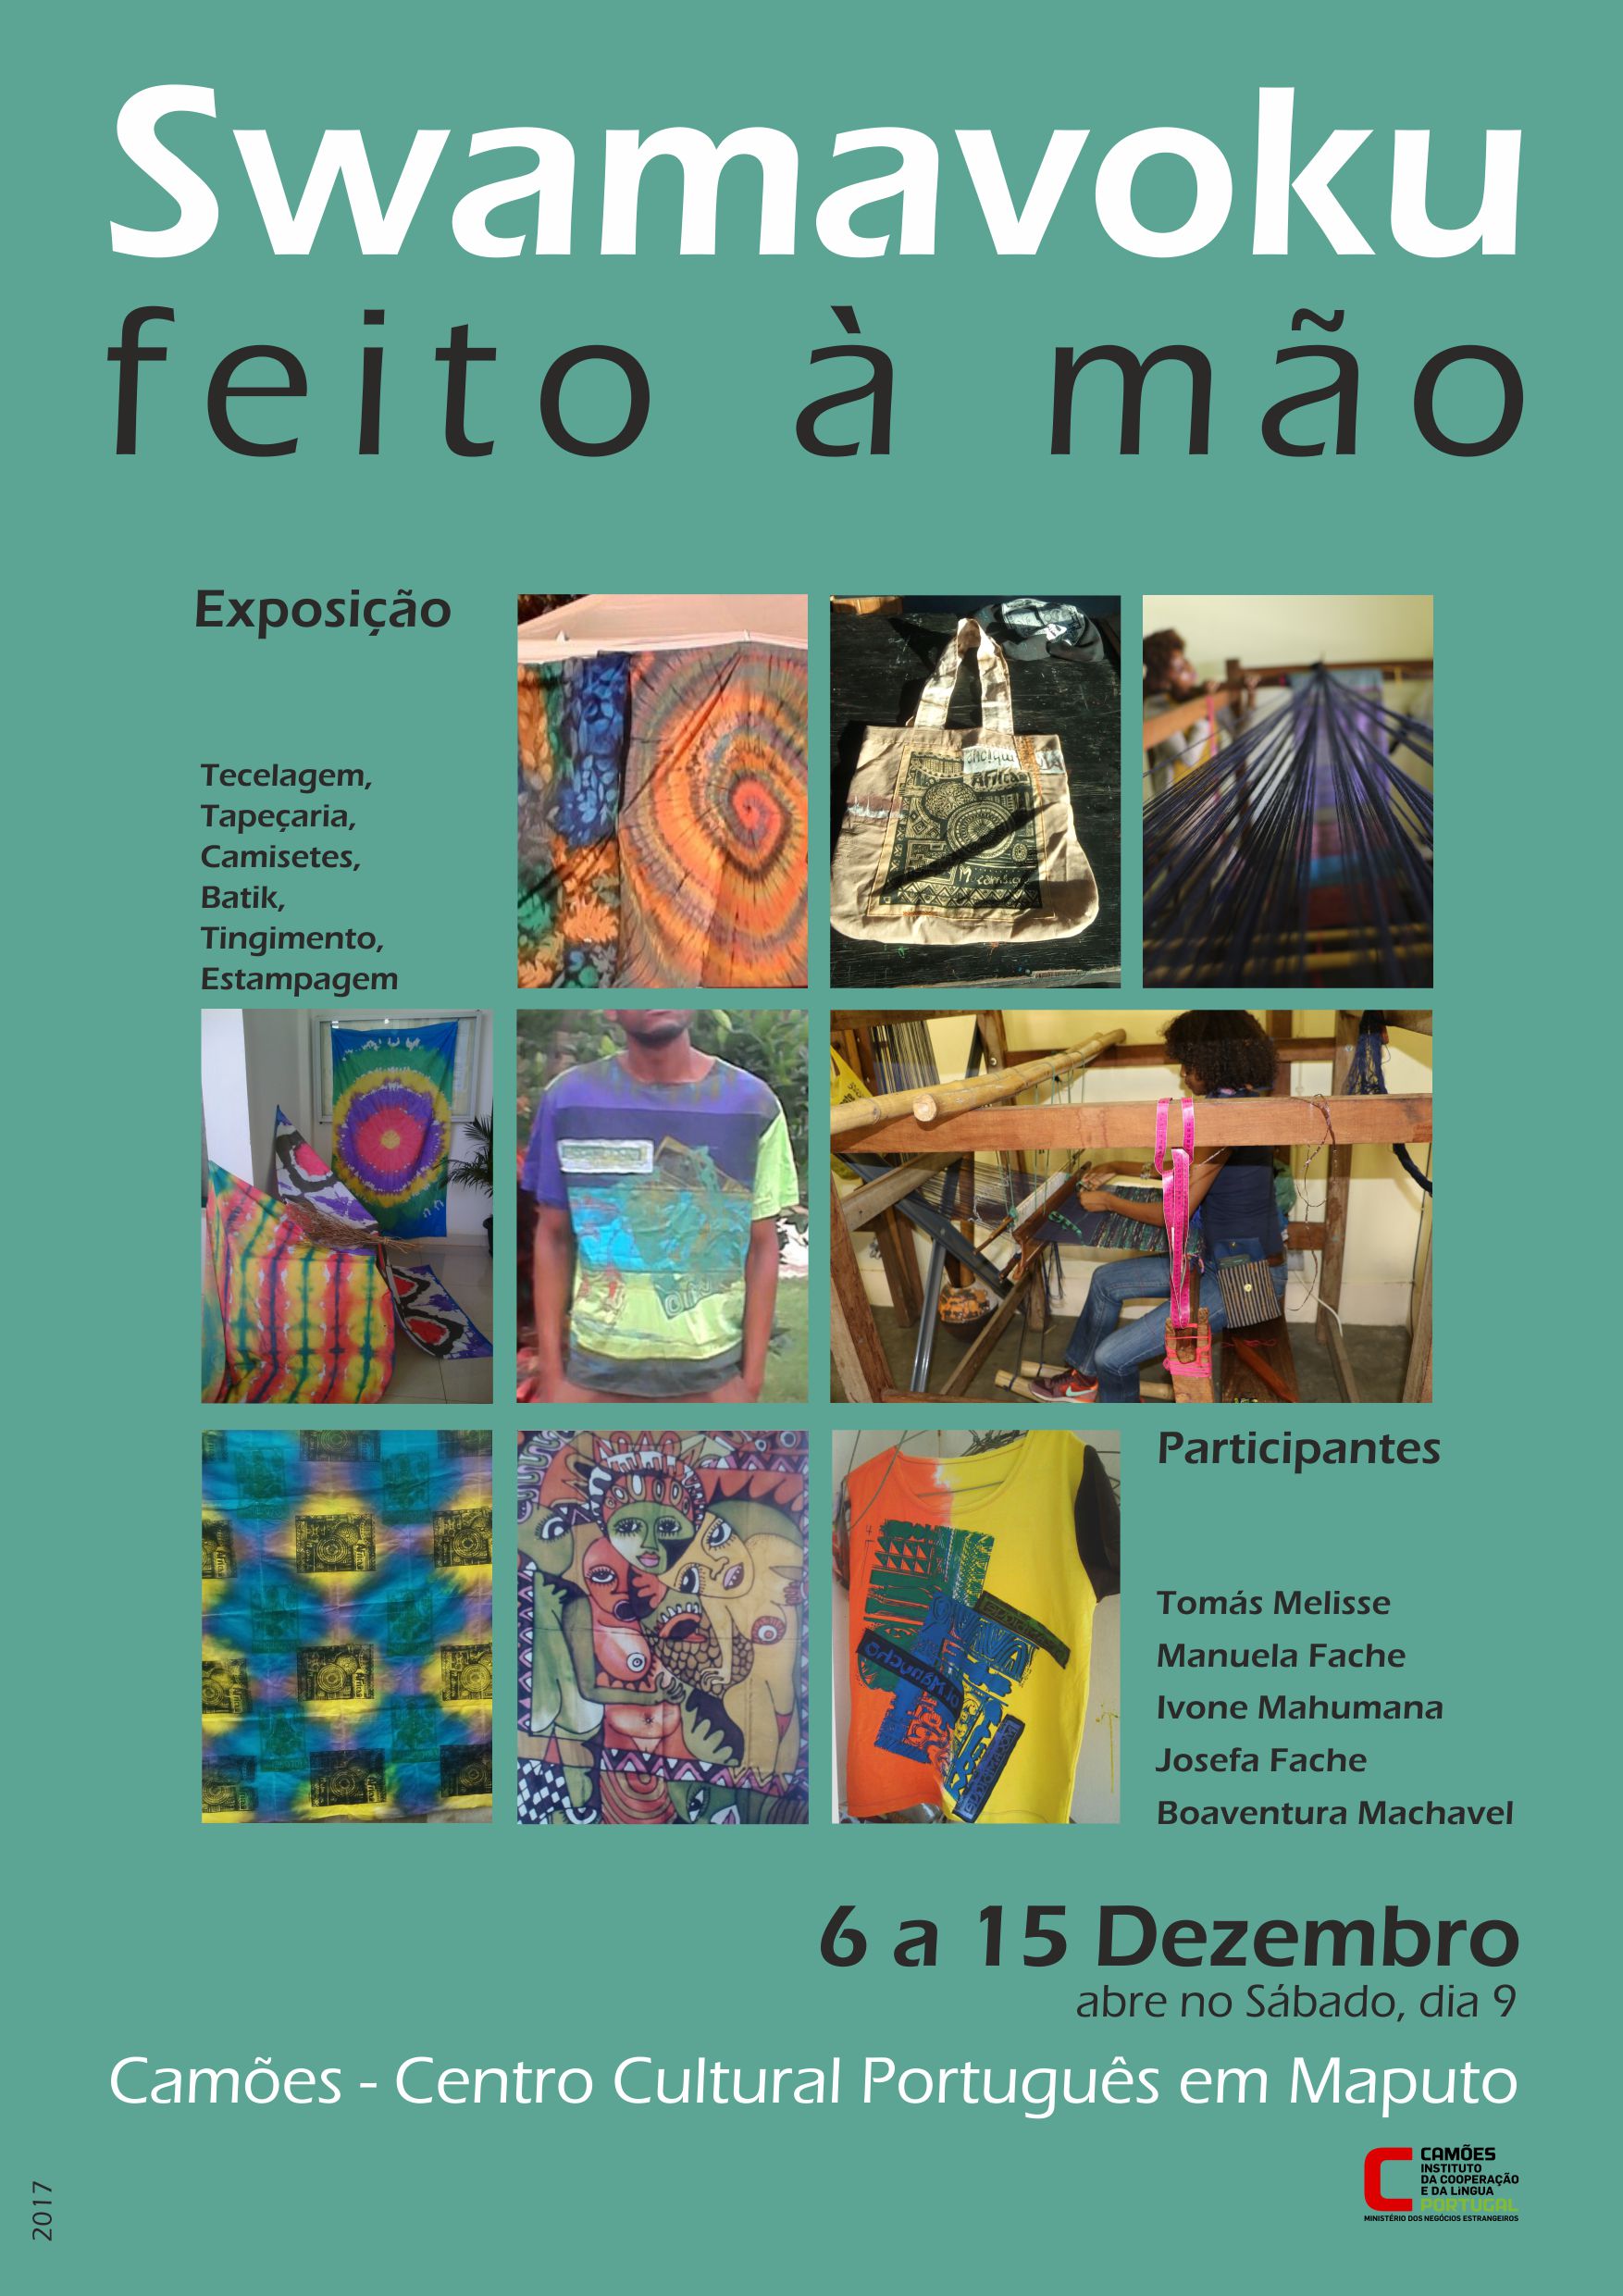 Camões – Centro Cultural Português em Maputo acolhe uma exposição do Projeto Swamavoku (feito à mão)